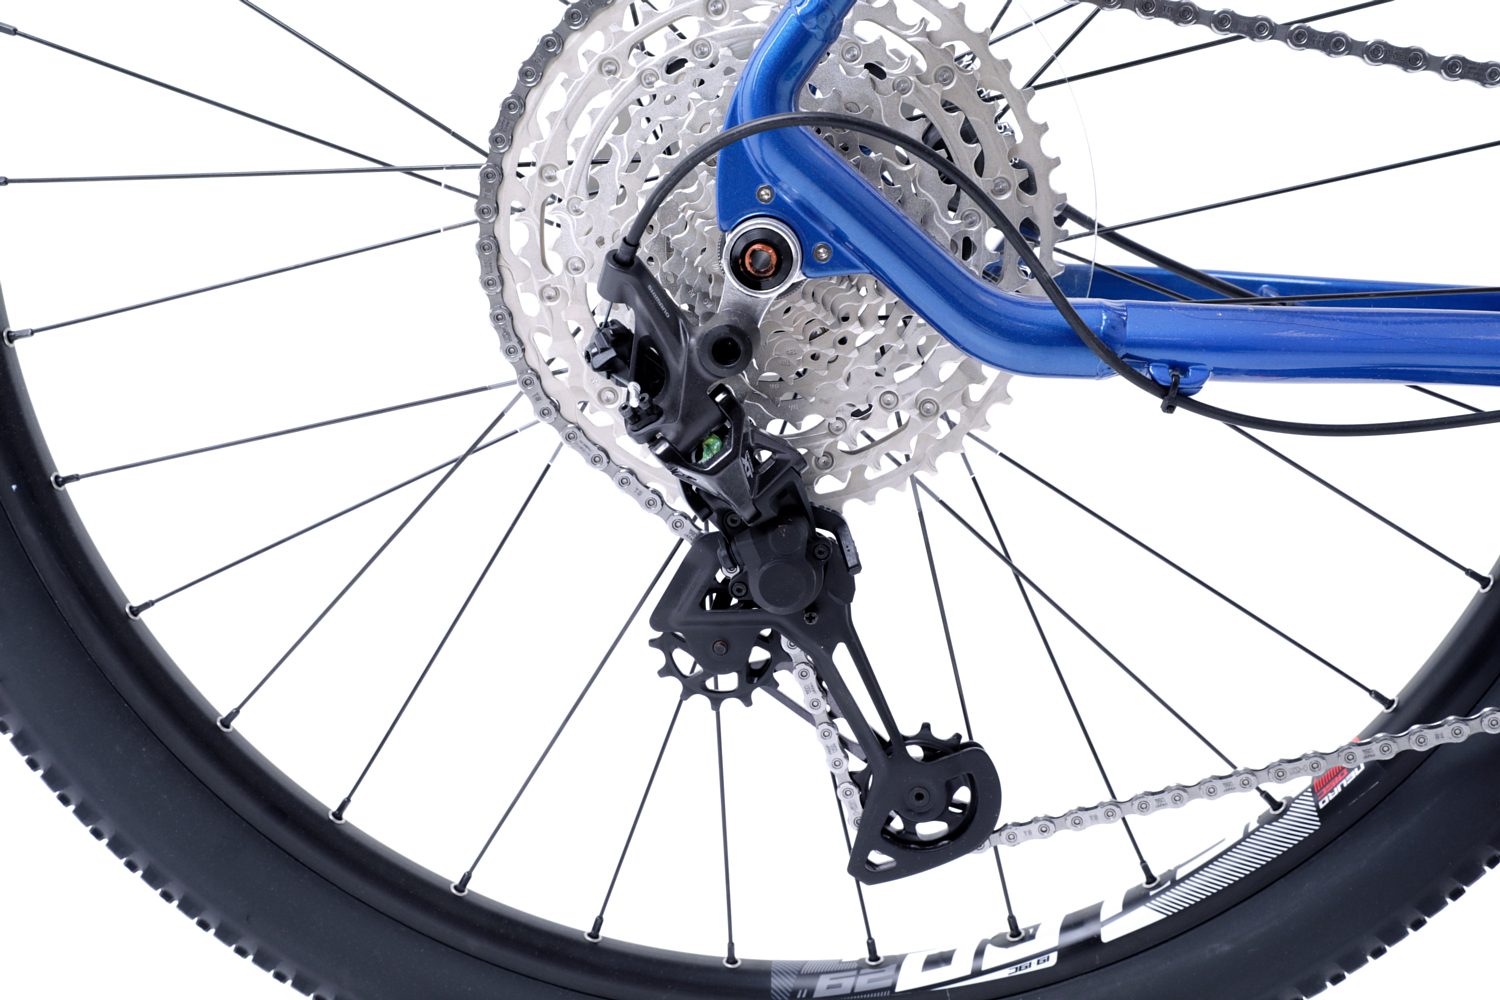 Велосипед BH Expert 4.5 2021 Blue/DarkRed